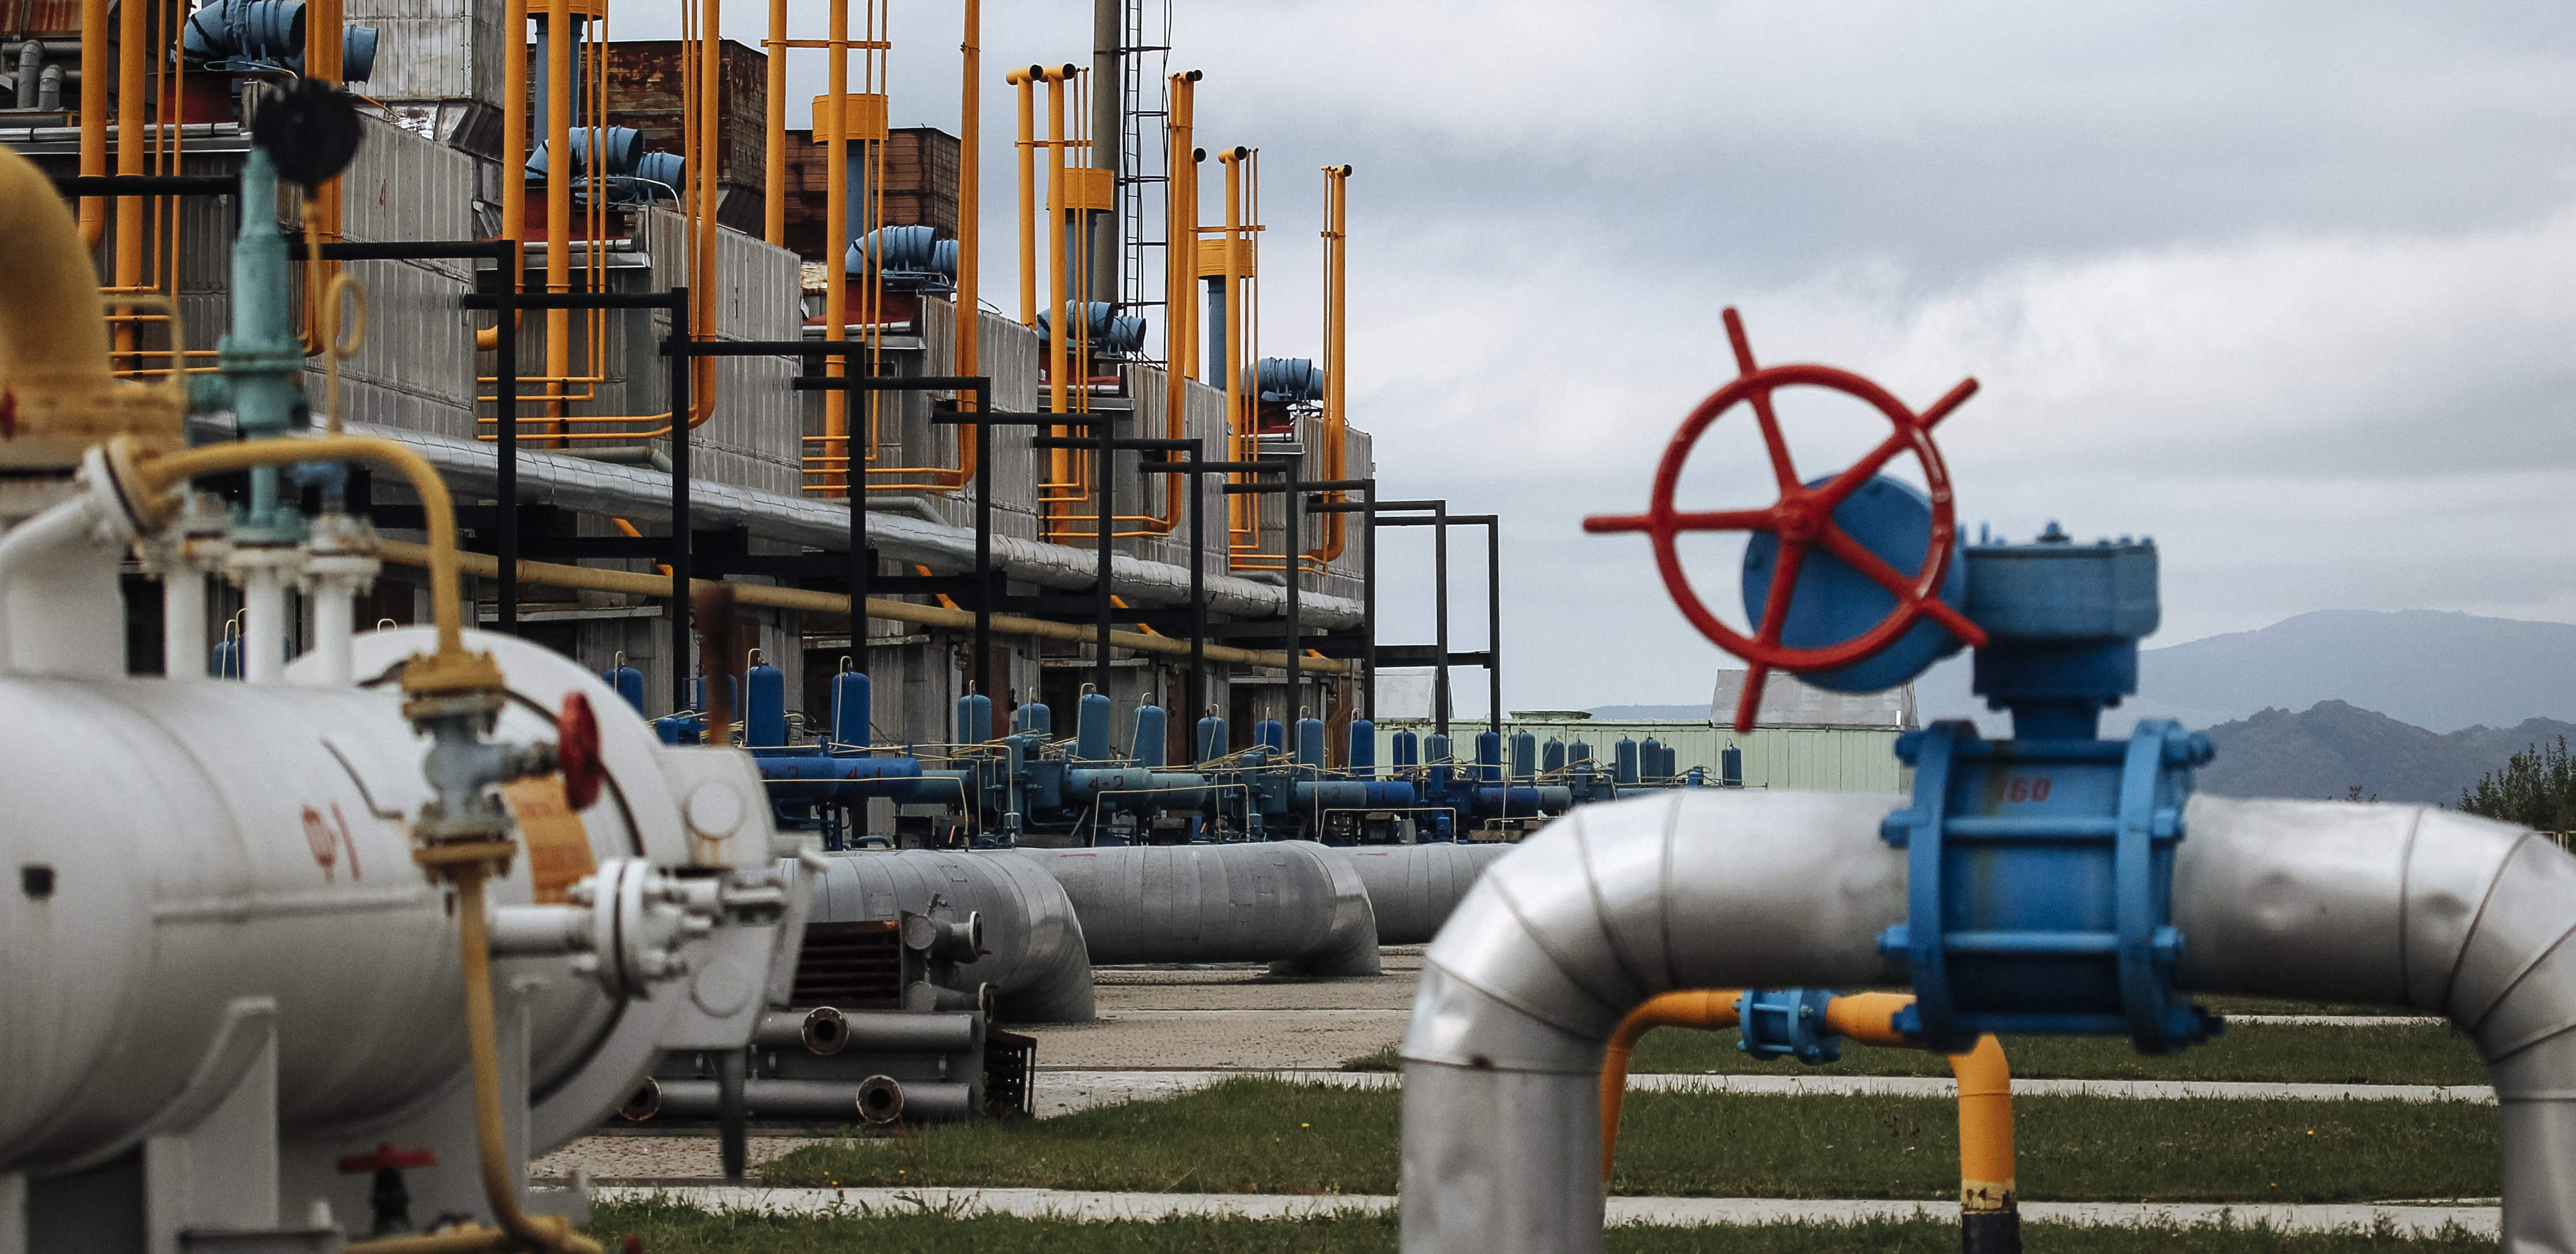 "SEVERNI TOK" PONOVO RADI Obnovljena isporuka ruskog gasa u Evropu